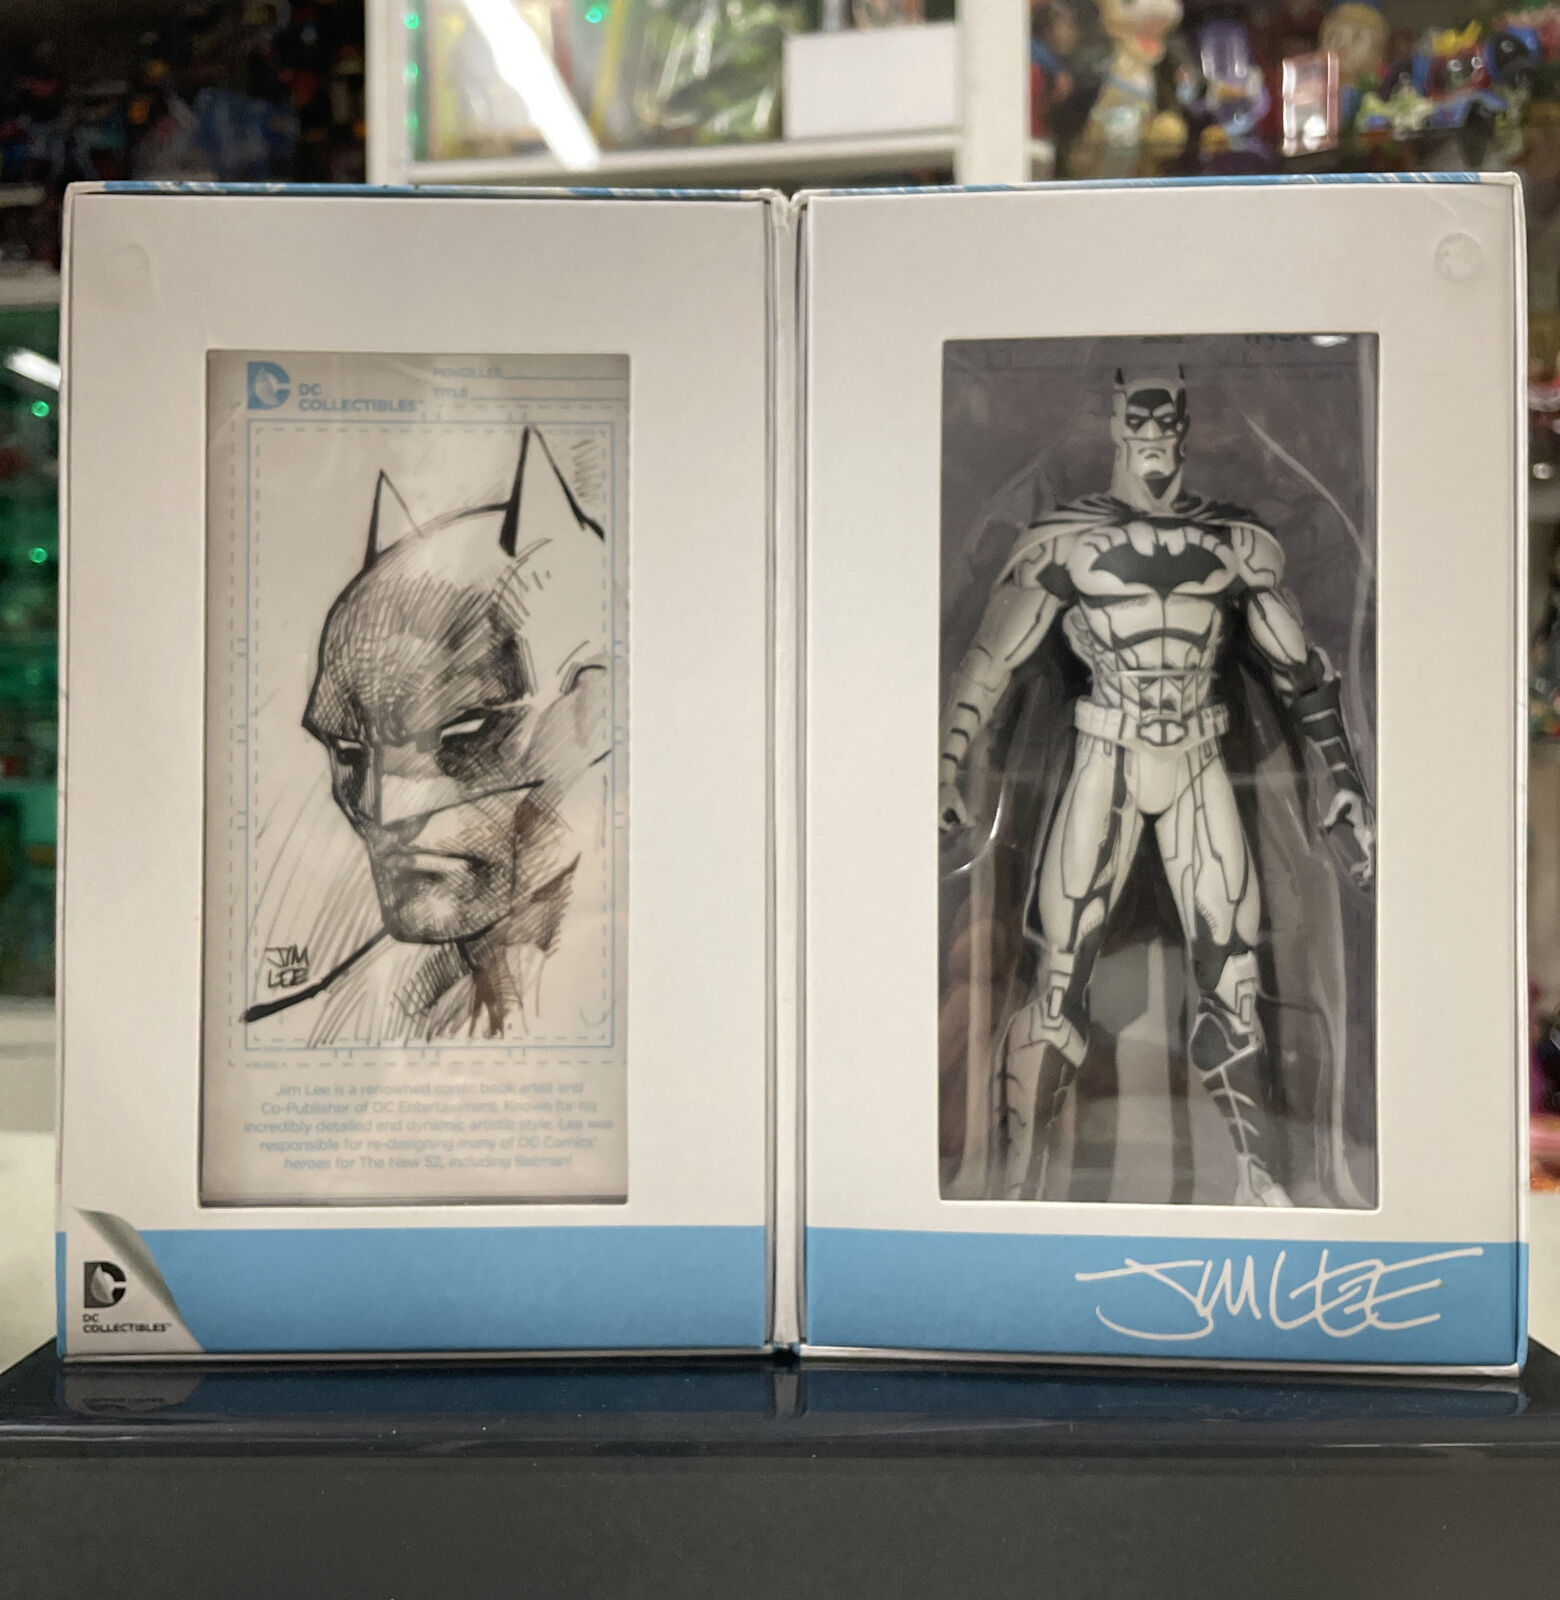 DC-Collectibles-Jim-Lee-Batman-BlueLine-SDCC-San-Diego-comic-con-2015-Limited-144823644974-4